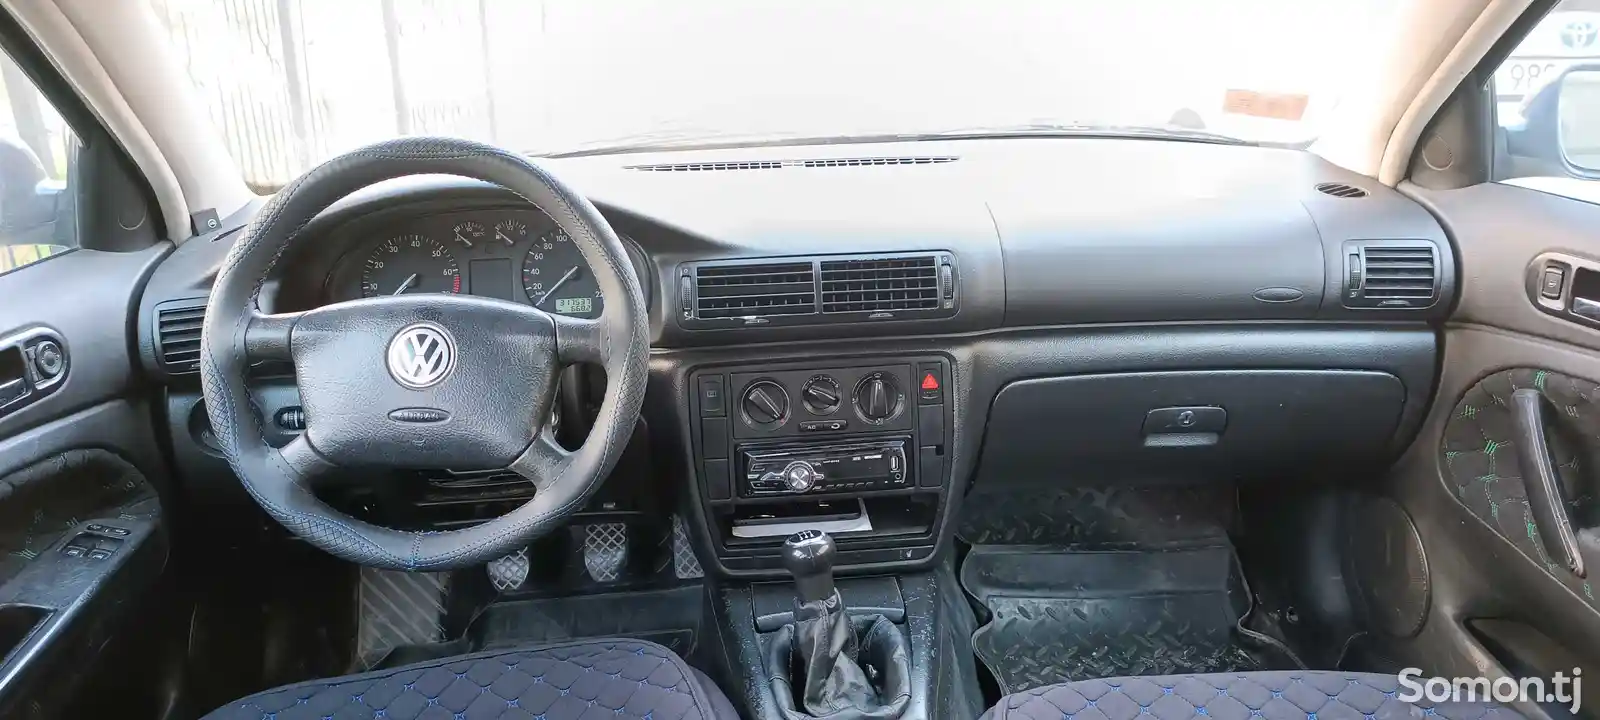 Volkswagen Passat, 1997-2